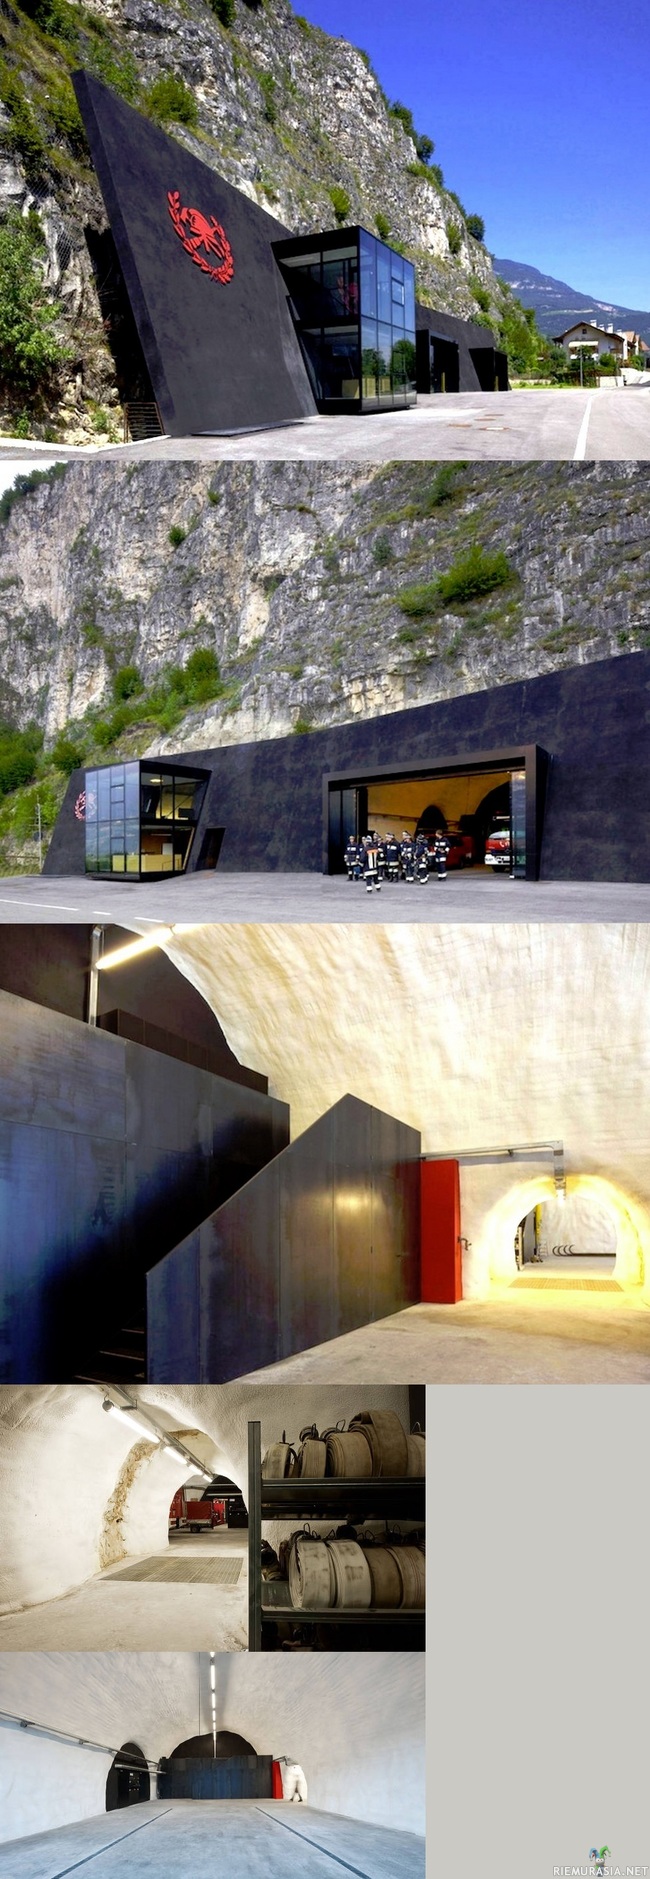 Paloasema Italiassa - Italialainen paloasema joka vastikää rakennettu kallioon. Salainen luolasto, wow!